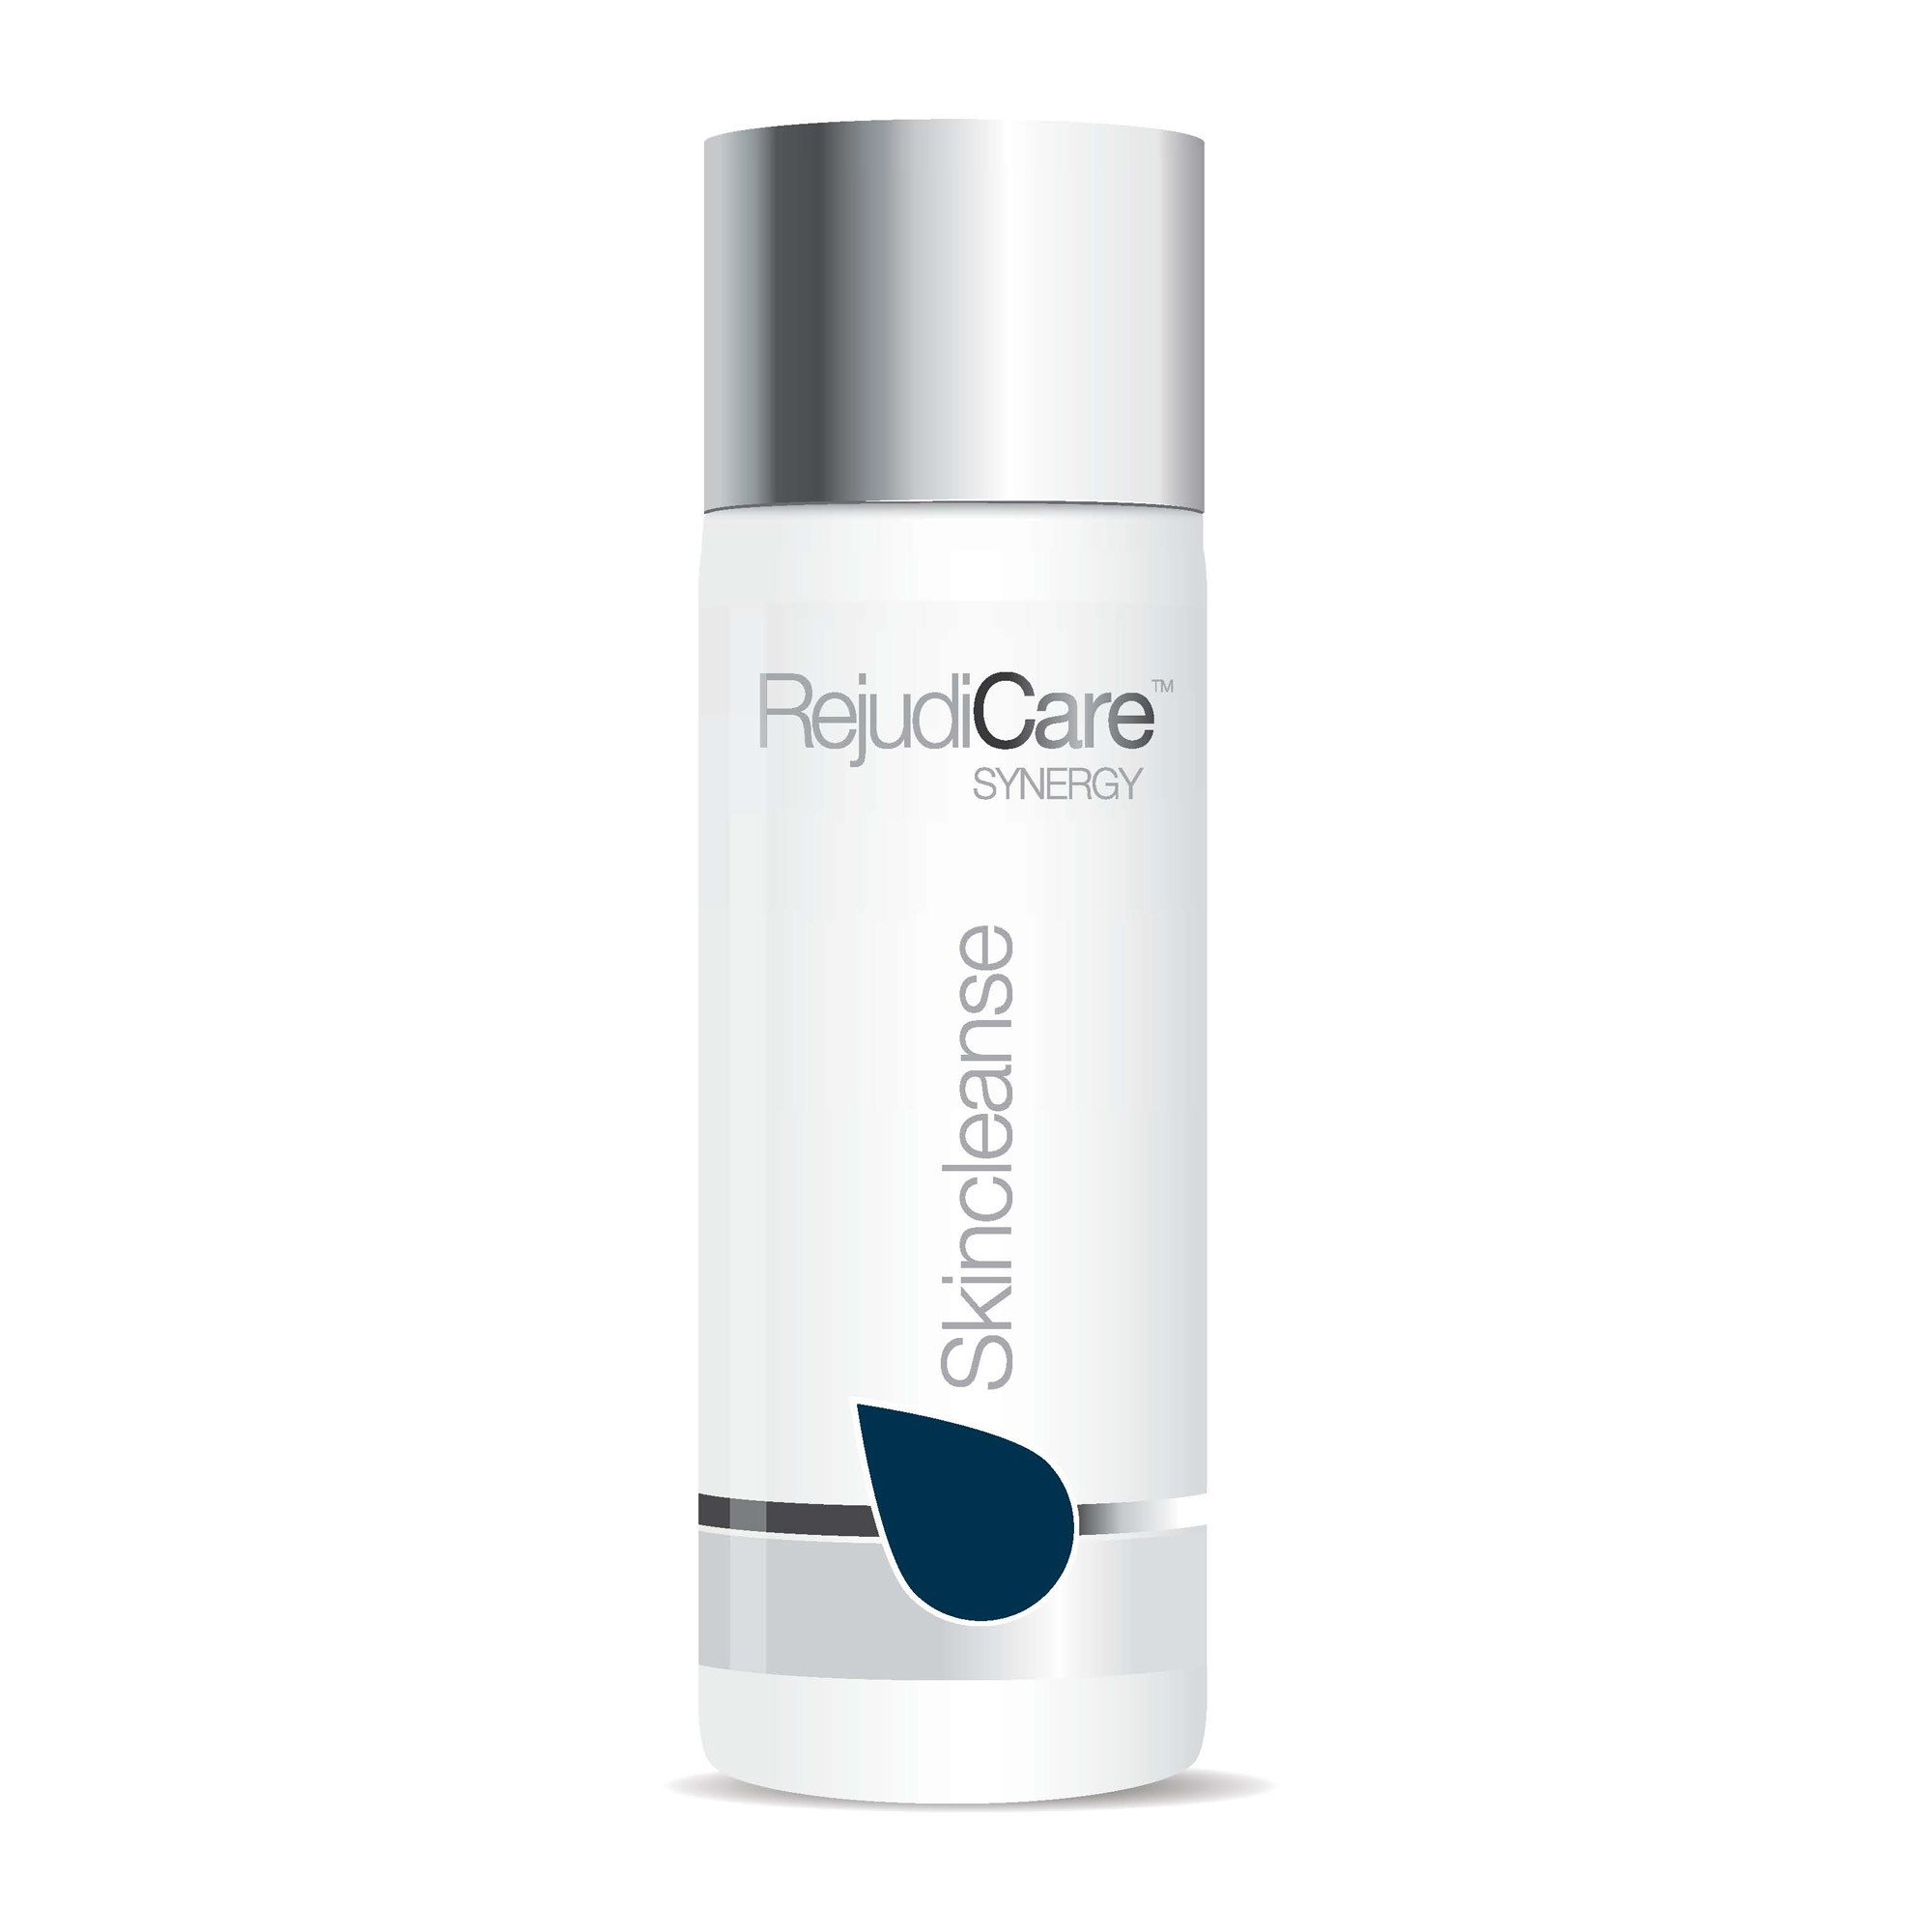 RejudiCare Purecleanse - Очищающая эмульсия для чувствительной кожи